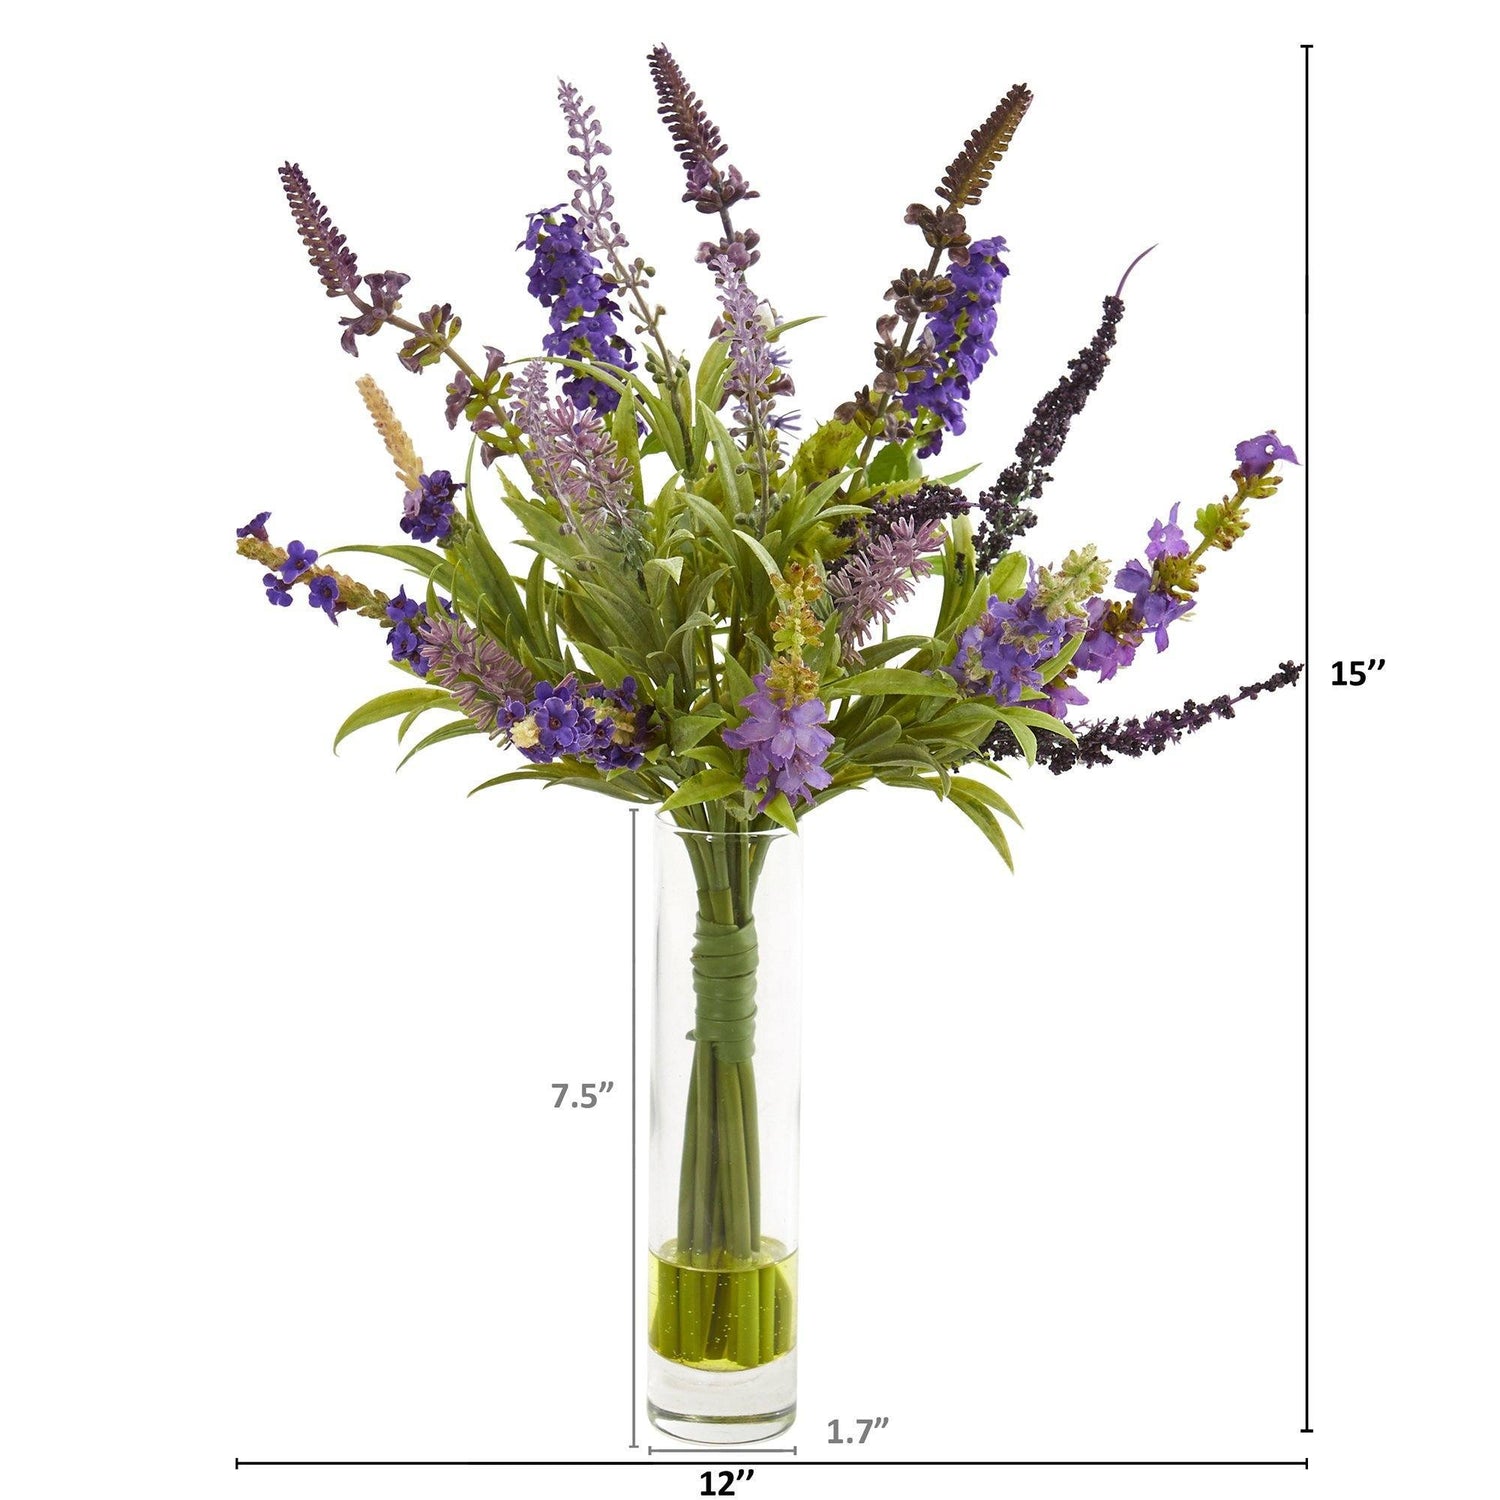 15” Lavender Artificial Arrangement in Glass Vase (Set of 2)